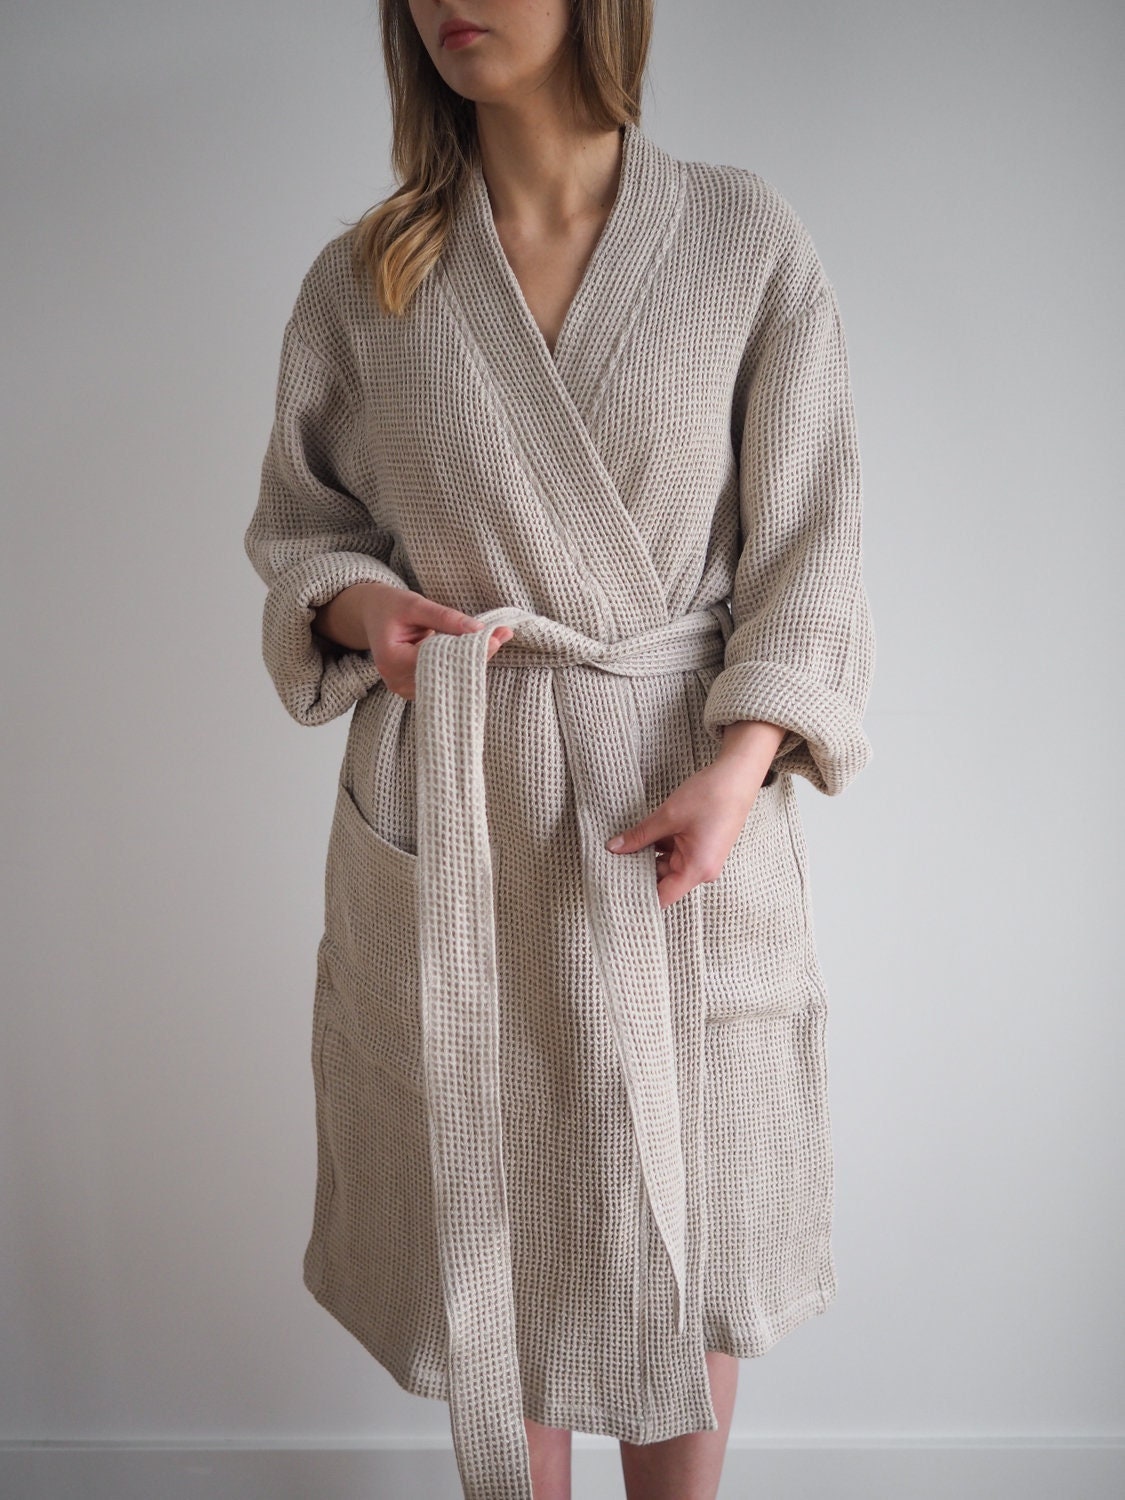 luxe badjas Kleding Gender-neutrale kleding volwassenen Pyjamas & Badjassen Jurken kimono badjas linnen spa badjas homewear cadeau voor haar Grijsgroene wafel linnen badjas voor hem klassieke linnen sauna badjas 